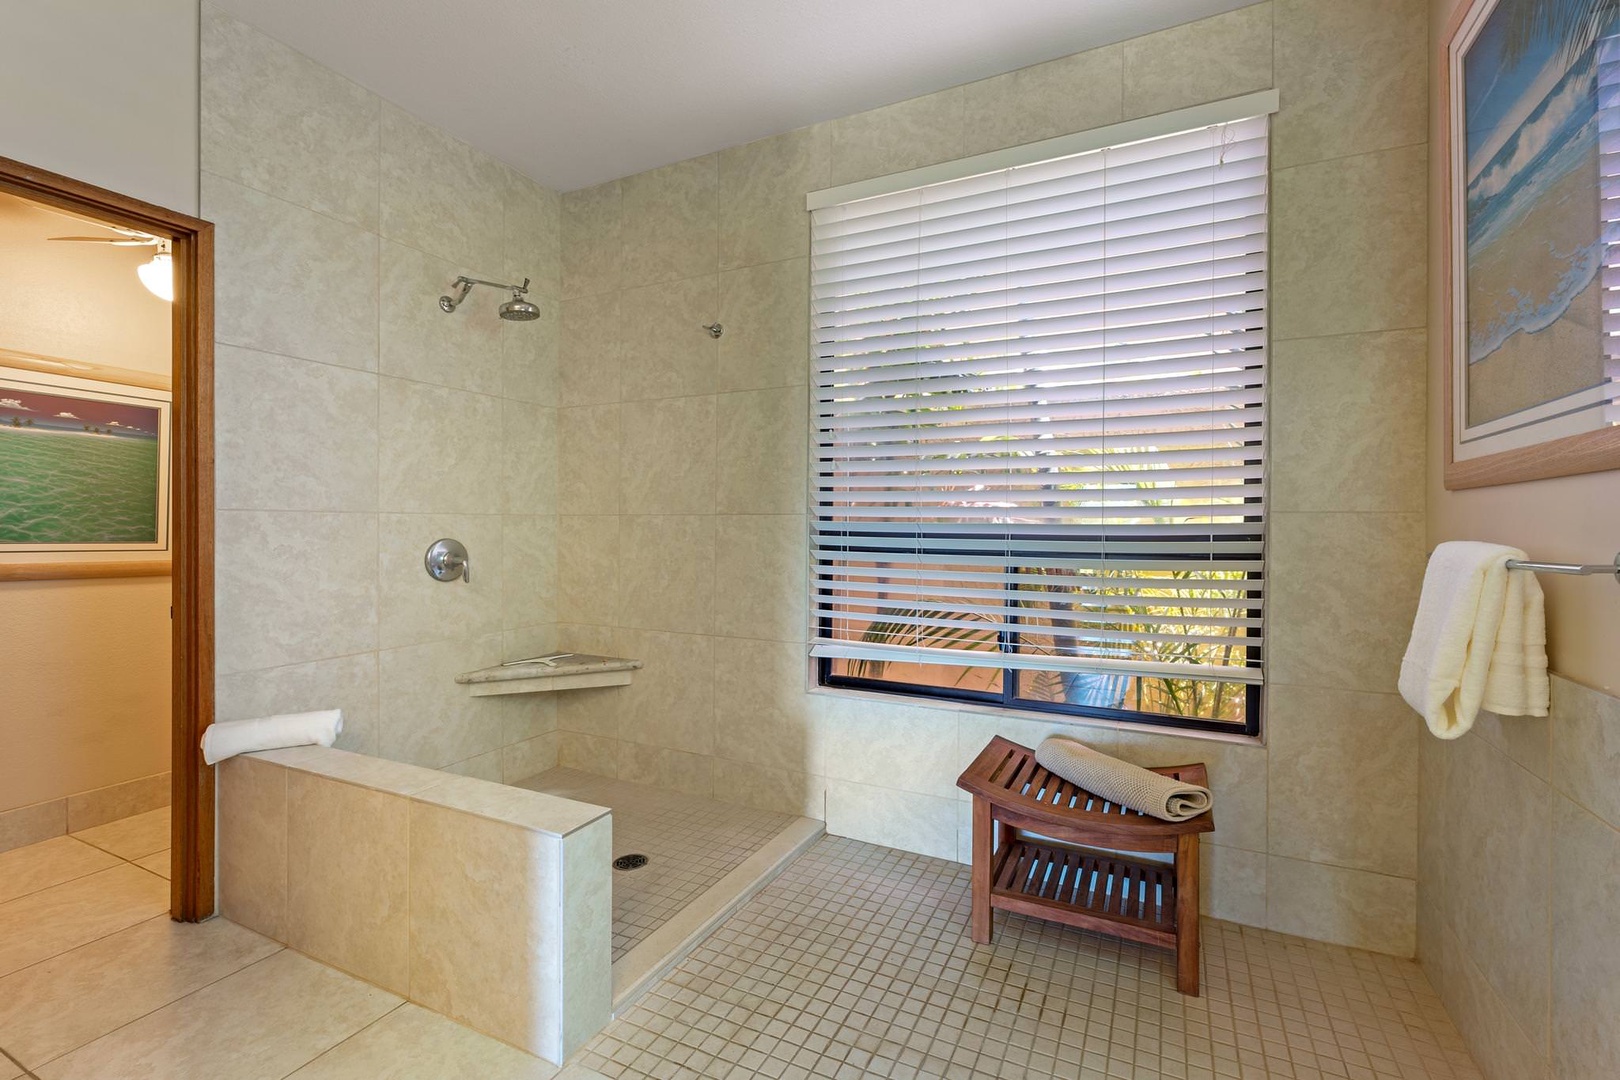 En suite bathroom with open standing shower, dual sinks